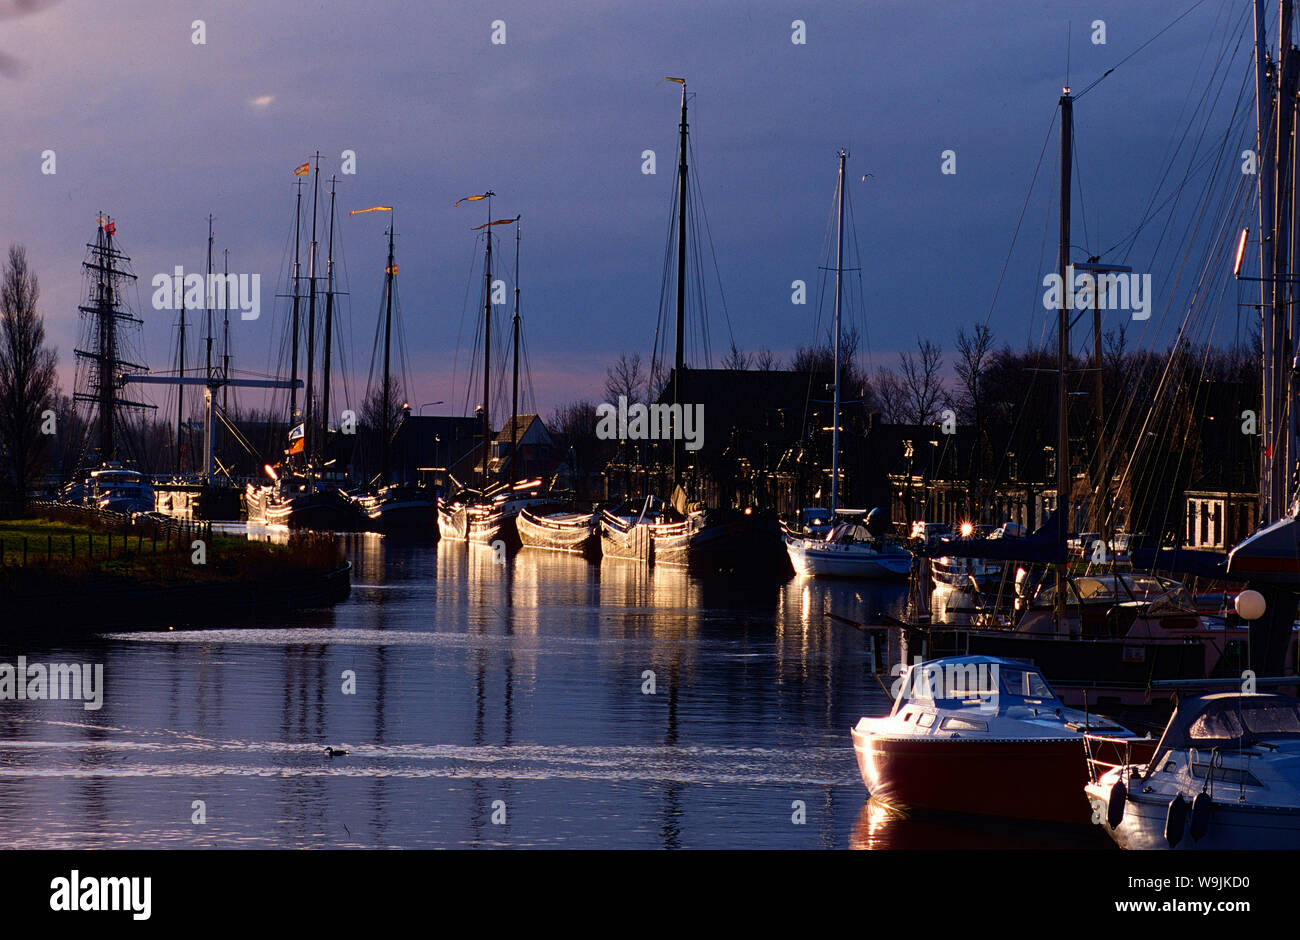 Stavoren, Hafen, Schiffe. Segelschiffe, Lichtstimmung, Provinz Friesland, Niederlande, 30070959 Stock Photo